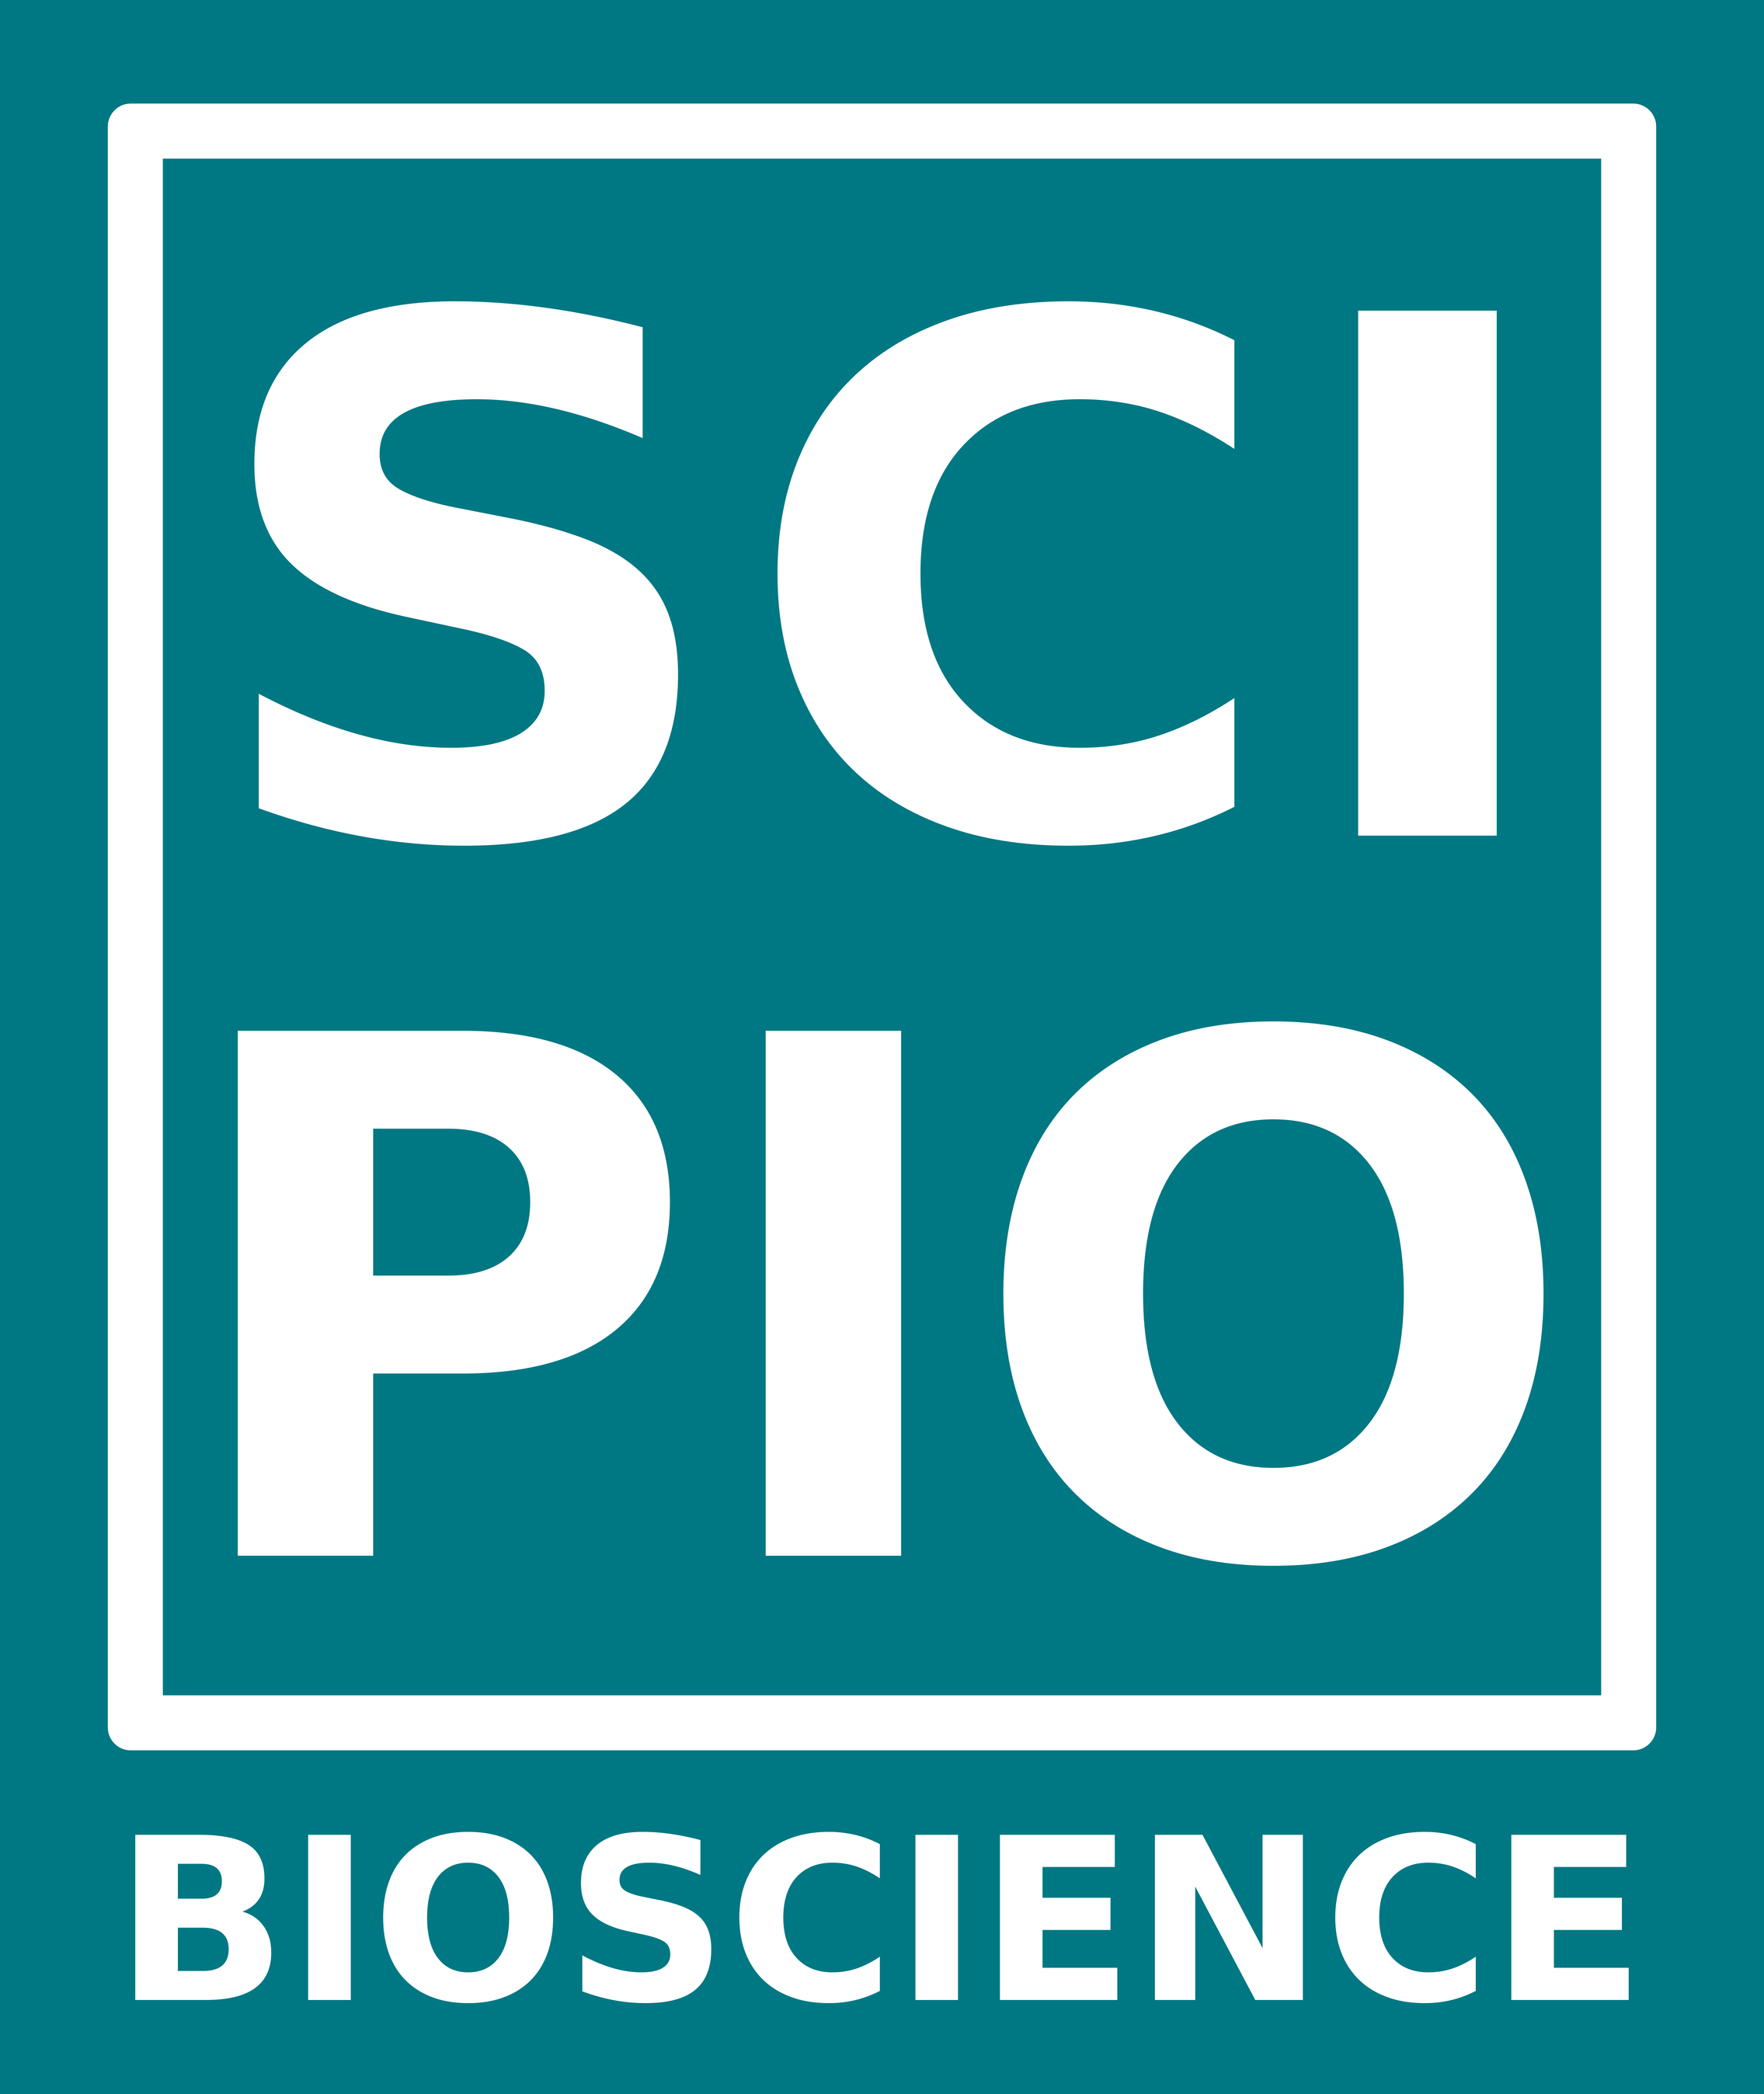 Scipio Bioscience